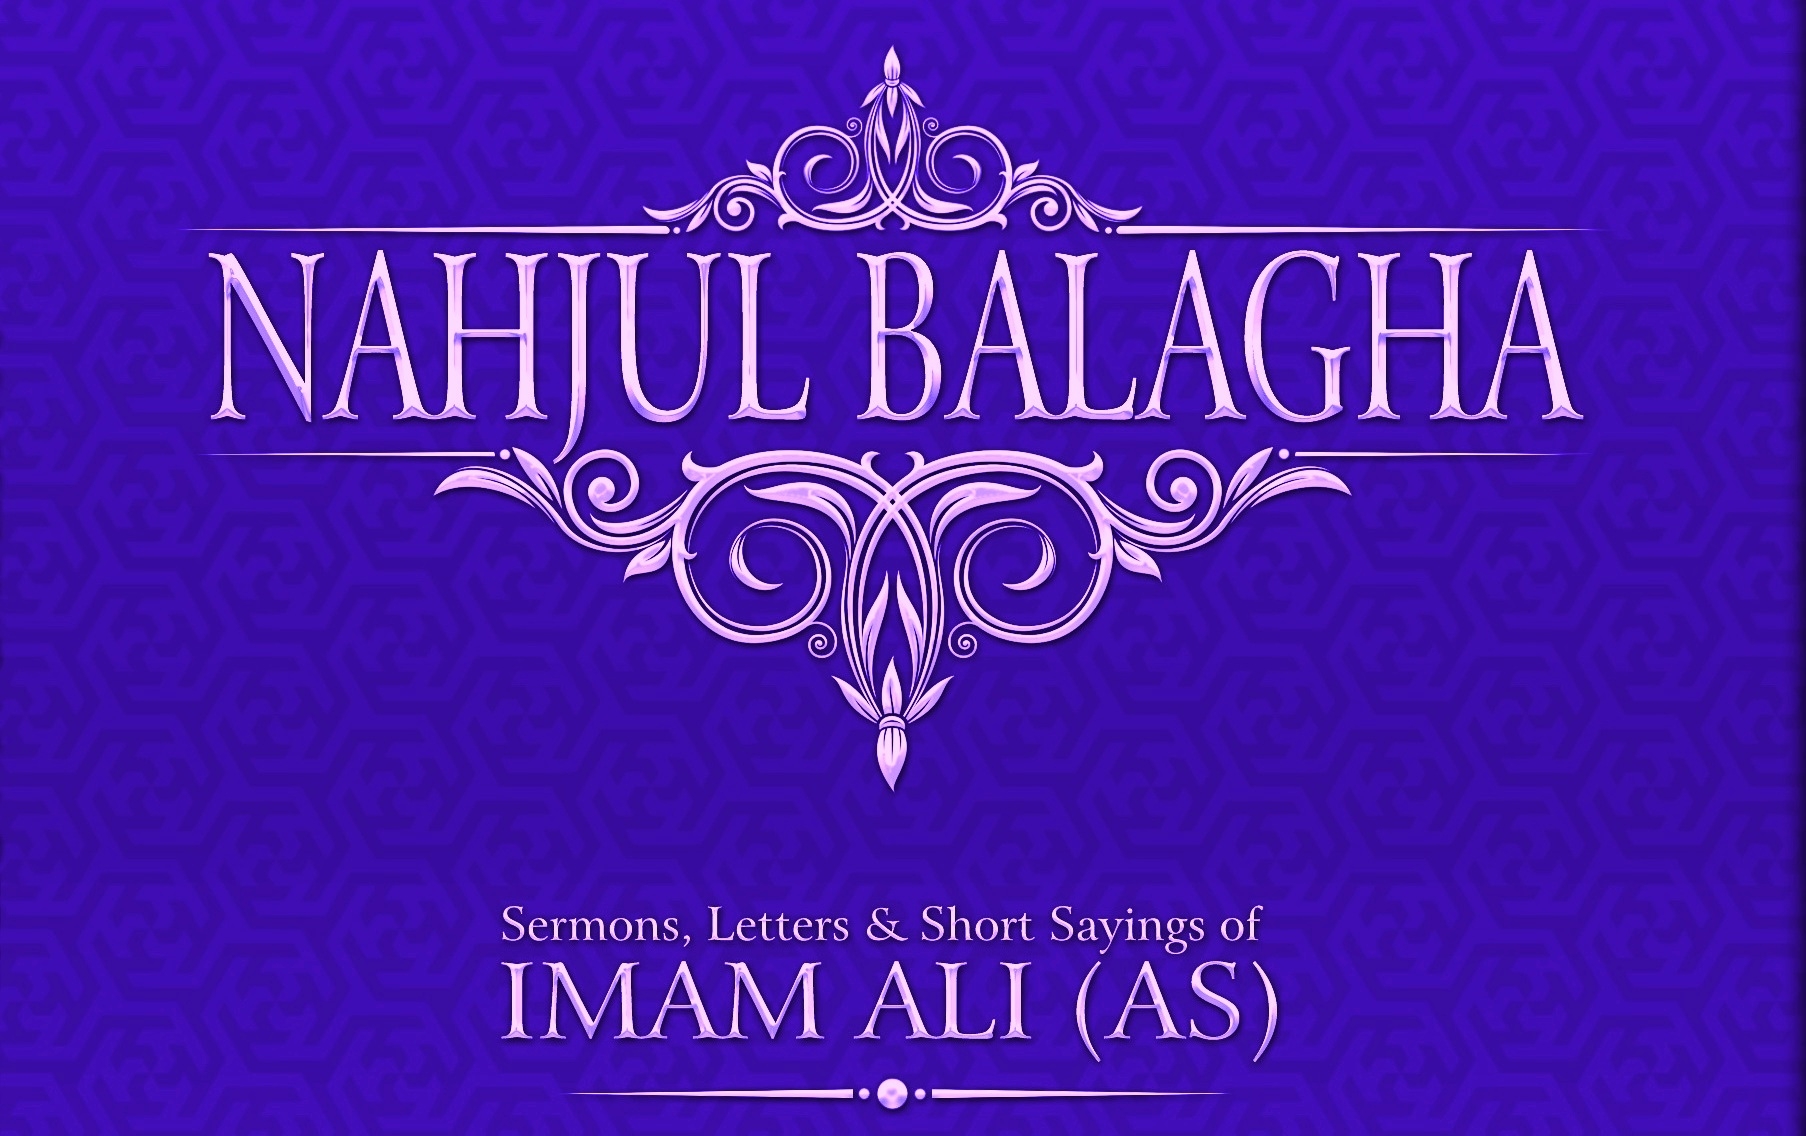 Una hoja del libro Nahyul Balagha: Os ha advertido del enemigo quien silenciosa y sutilmente penetra en vosotros